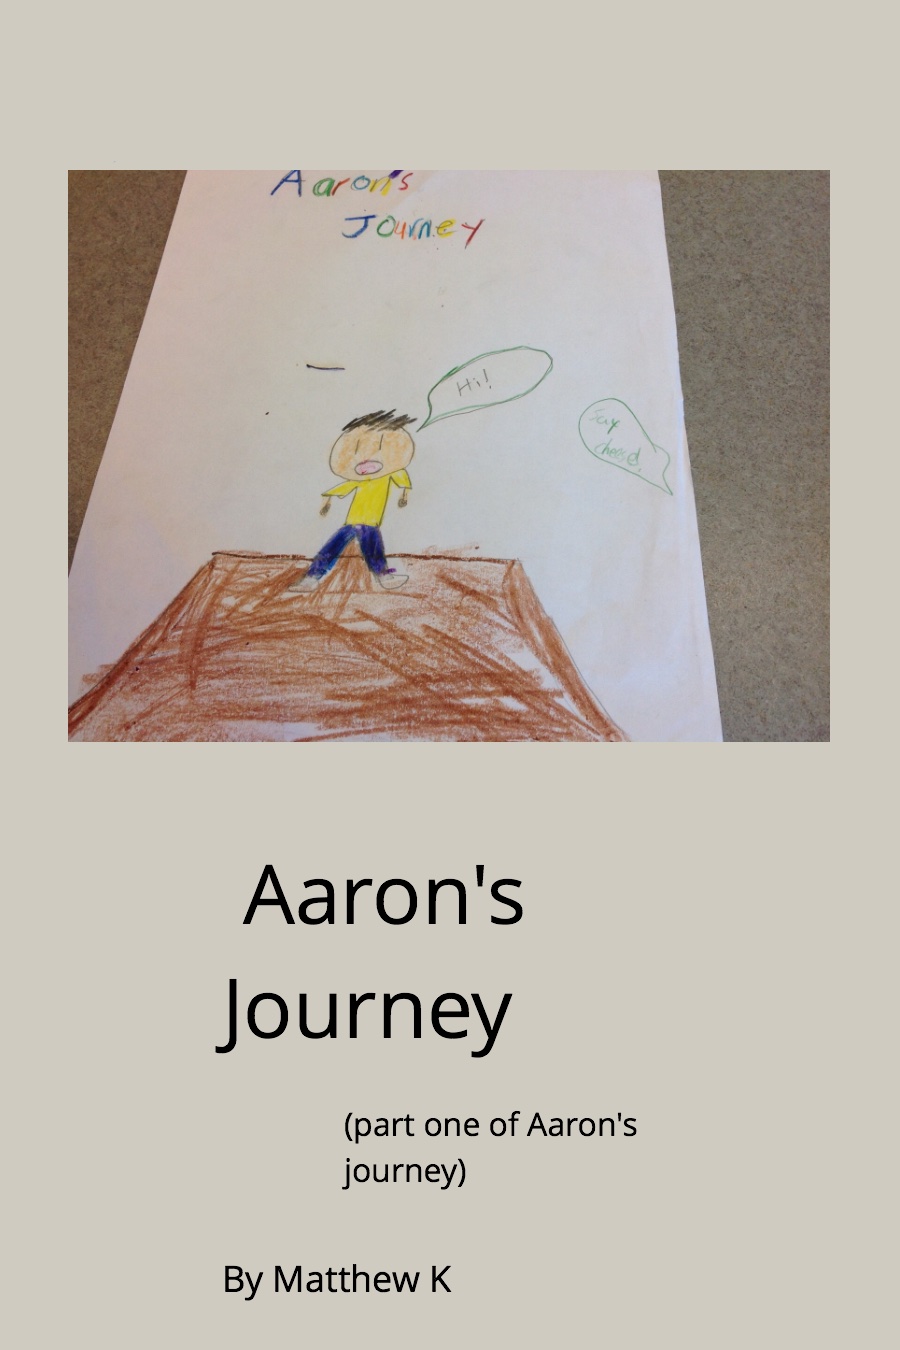 Aaron’s Journey by Matthew K